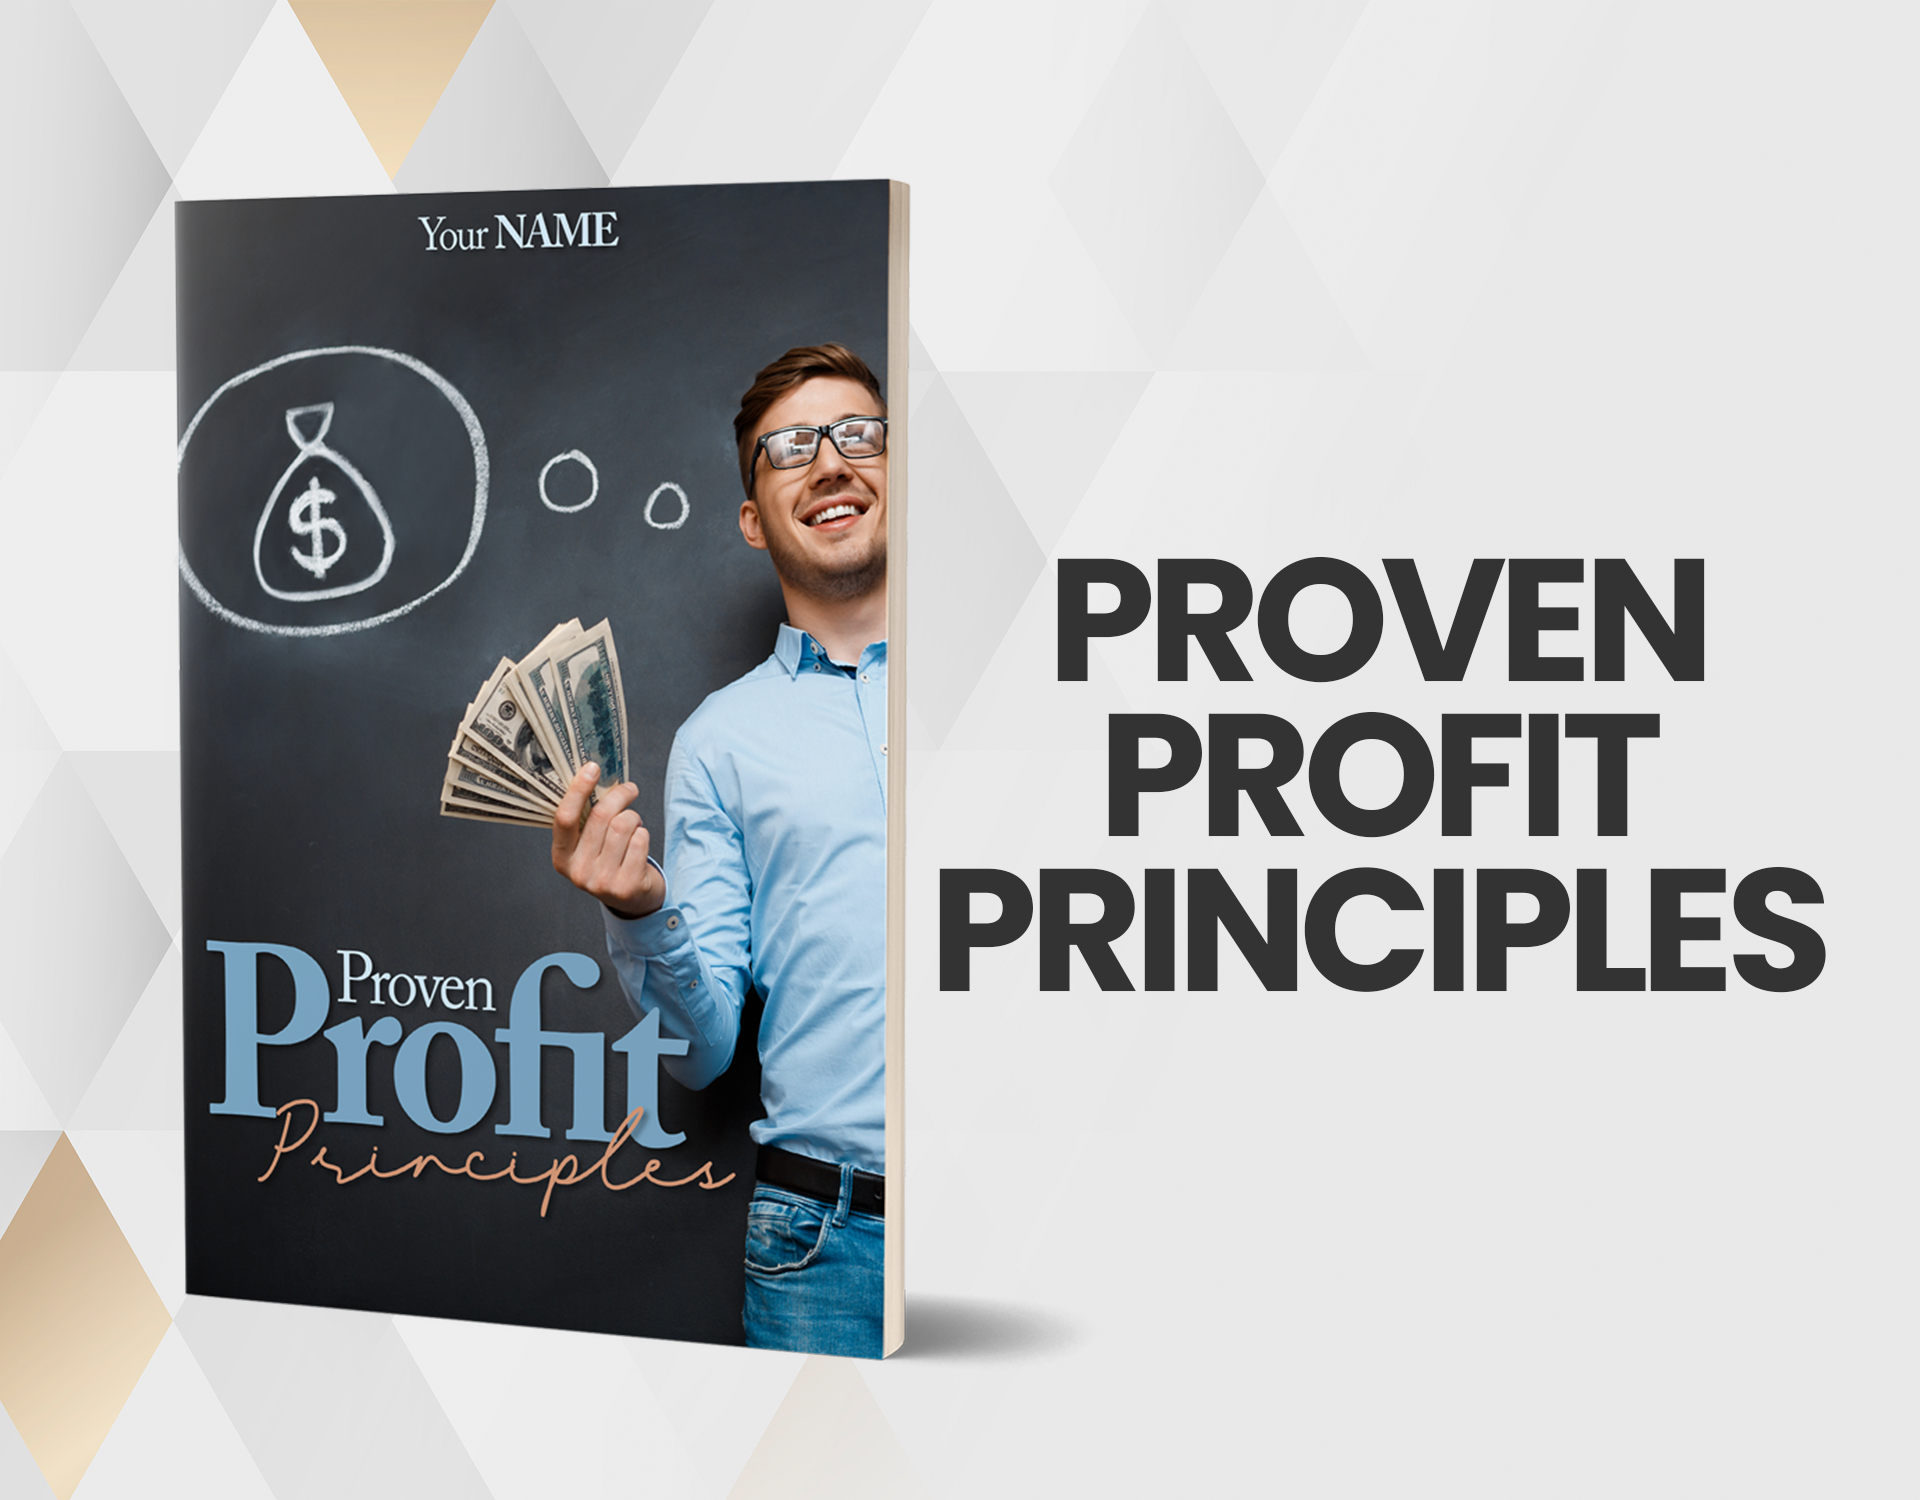 1. Proven Profit Principles